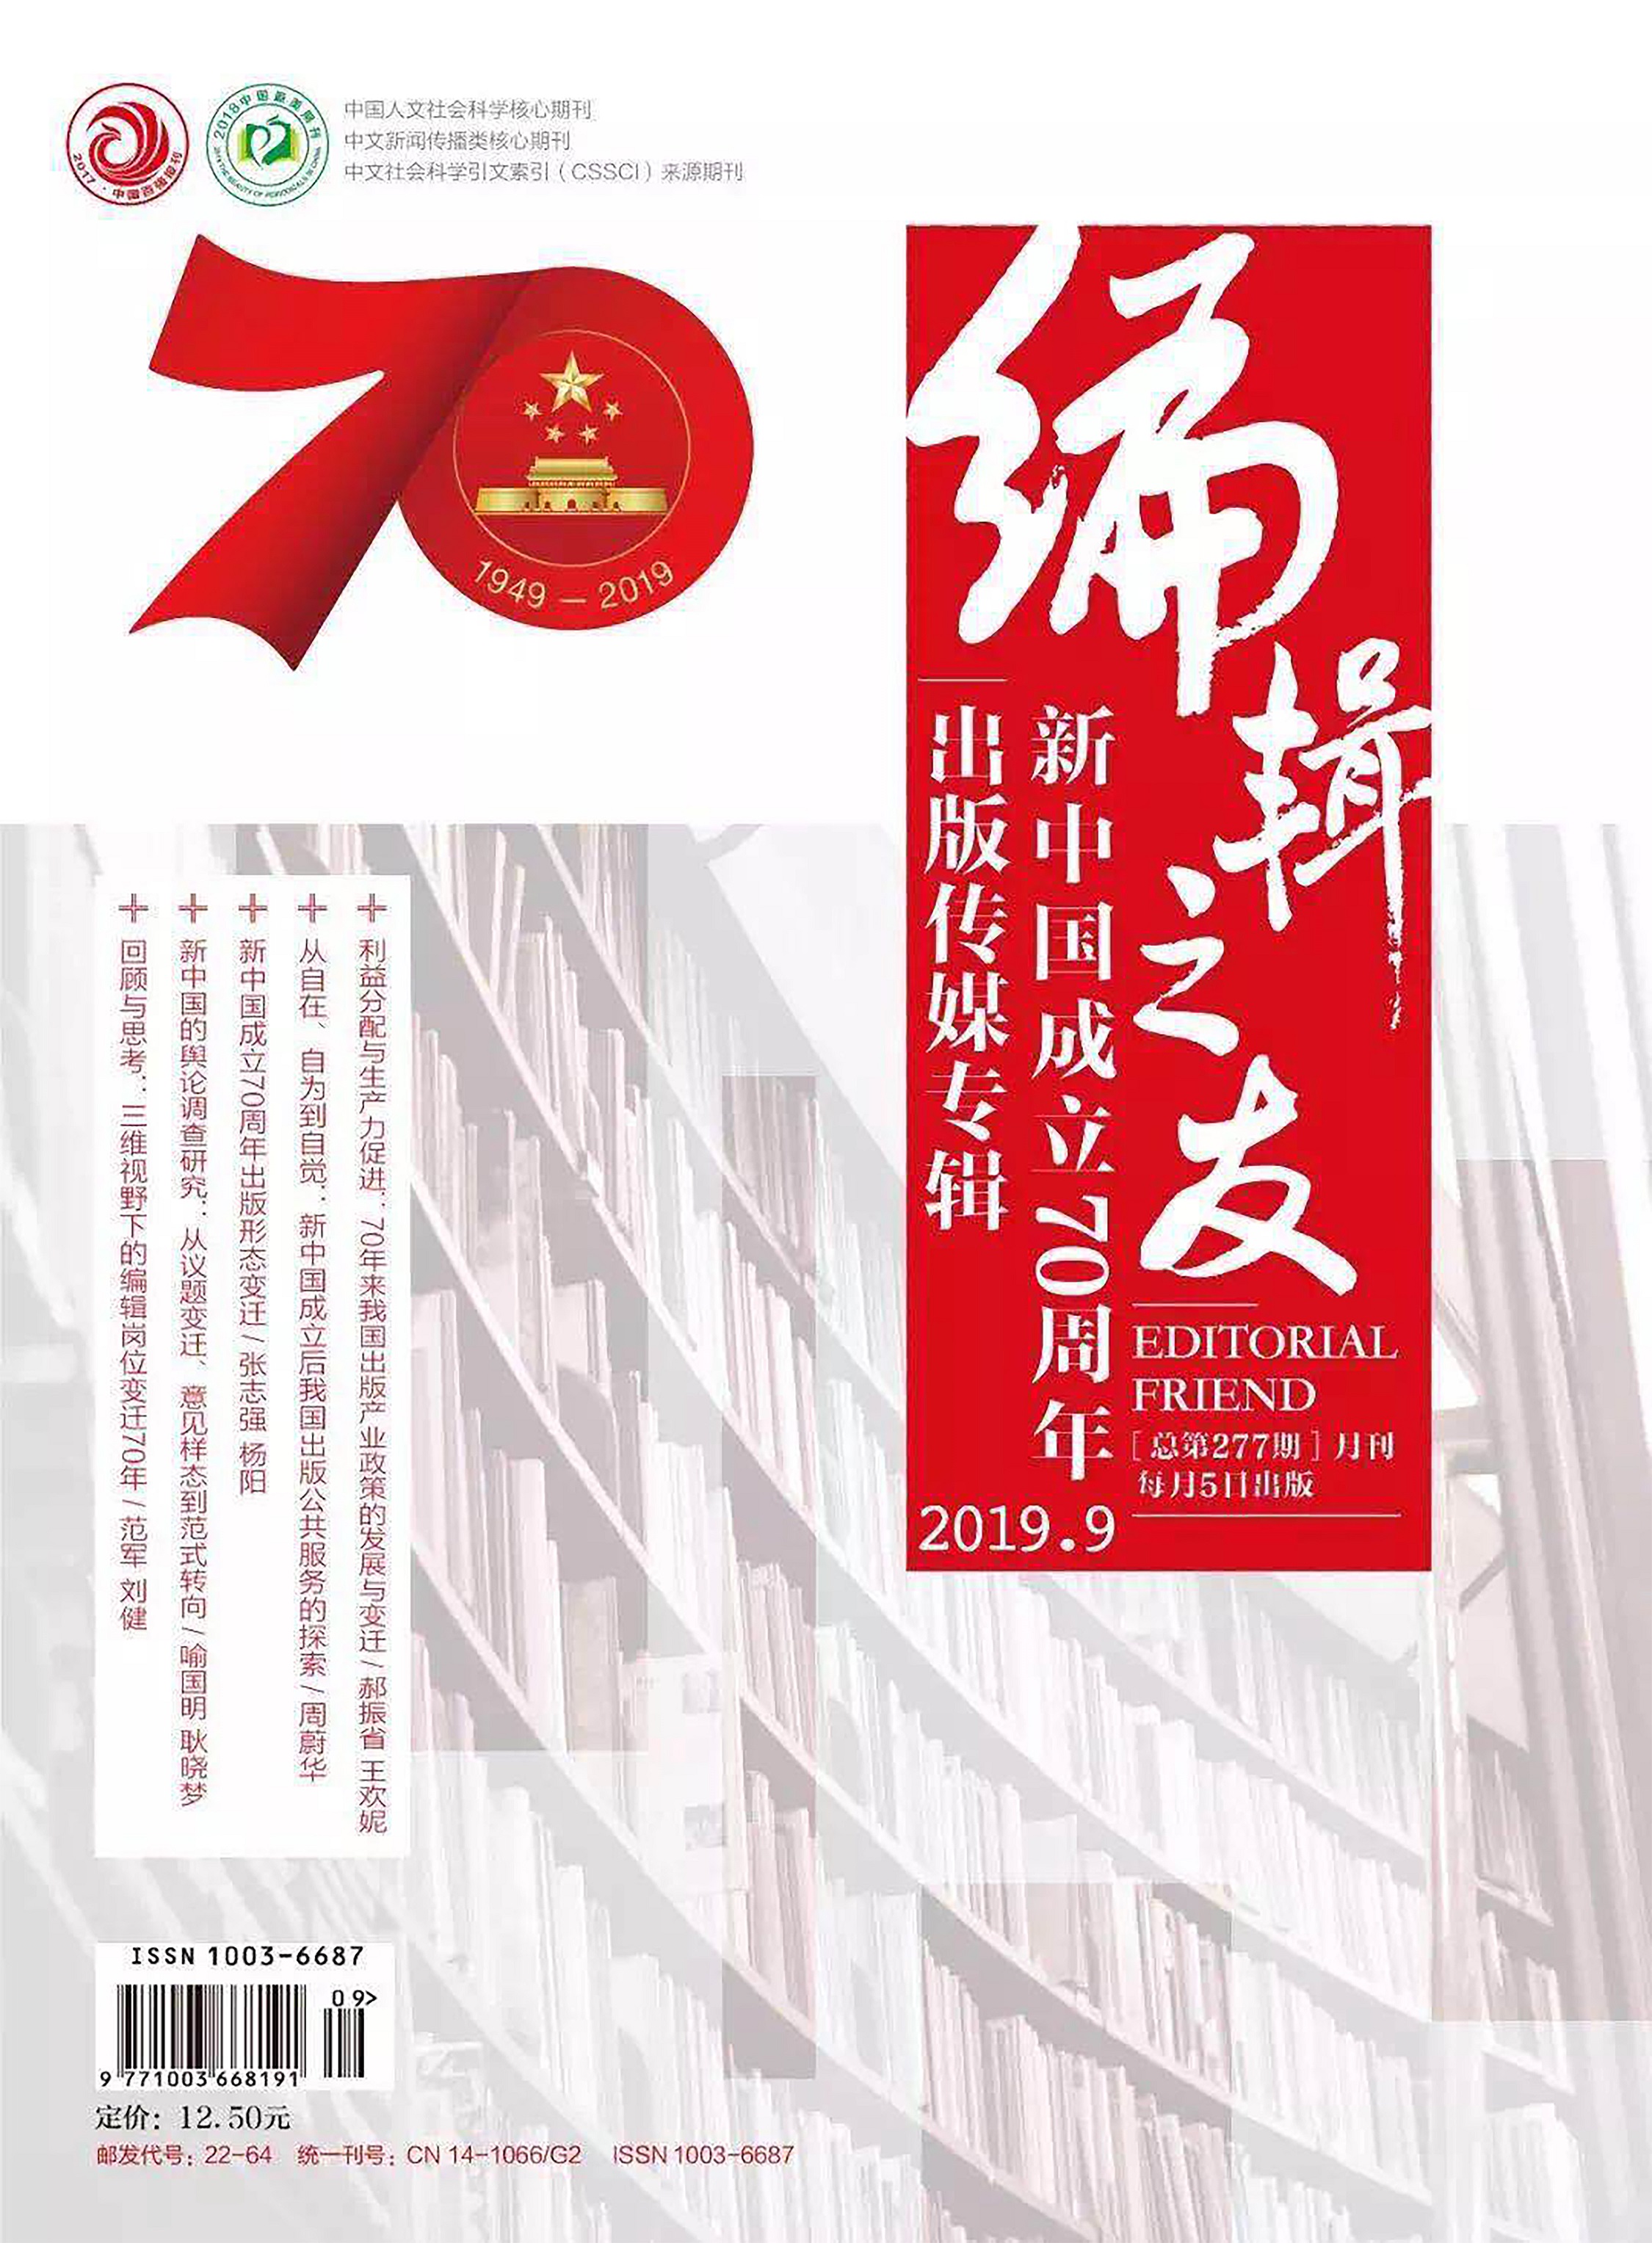 编辑之友庆祝中华人民共和国成立70周年.jpg